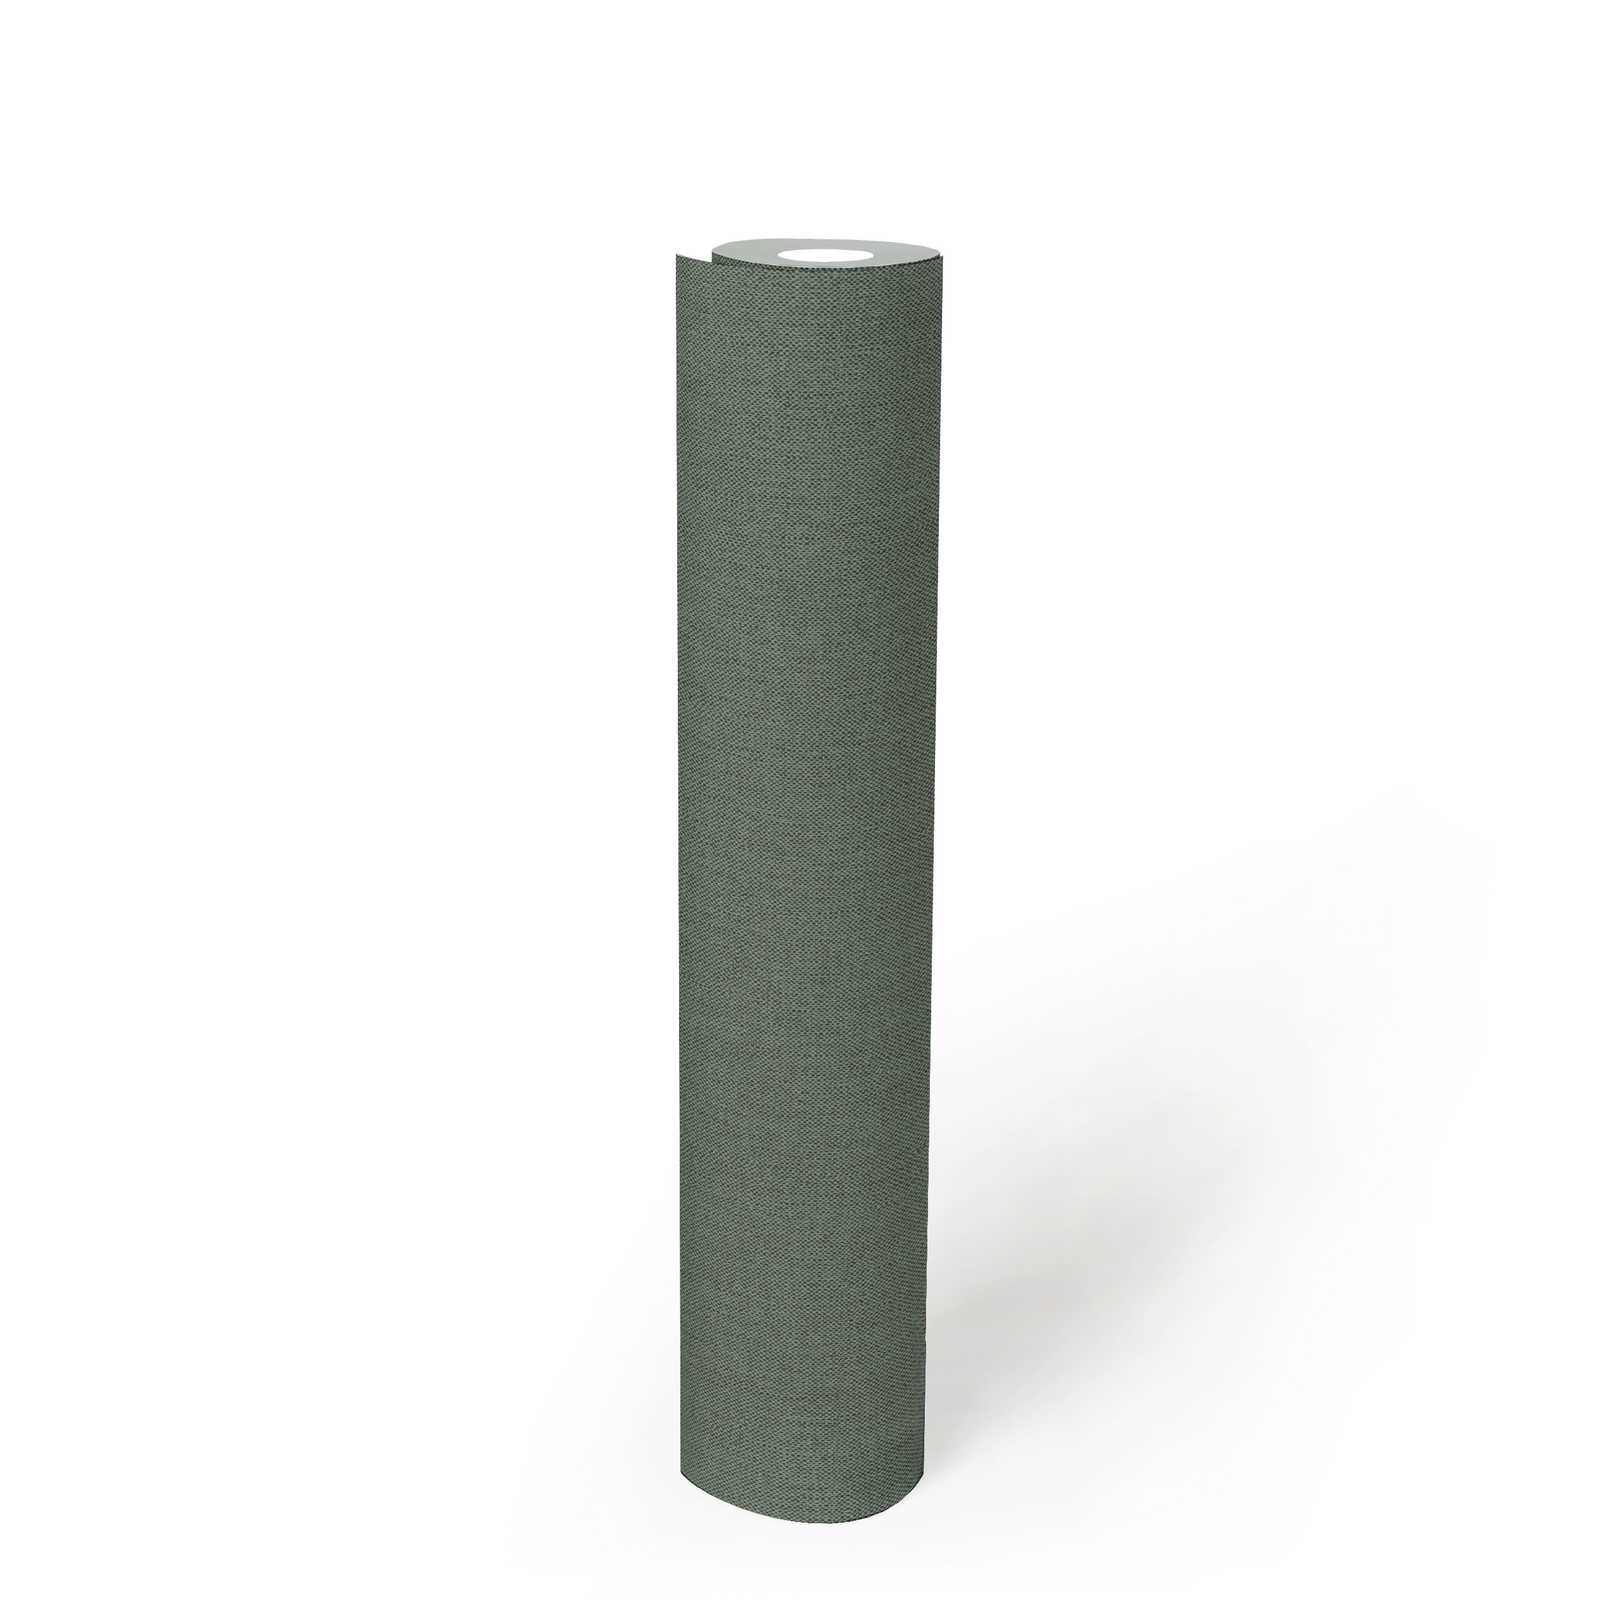             Plain wallpaper fir green with textile texture - green
        